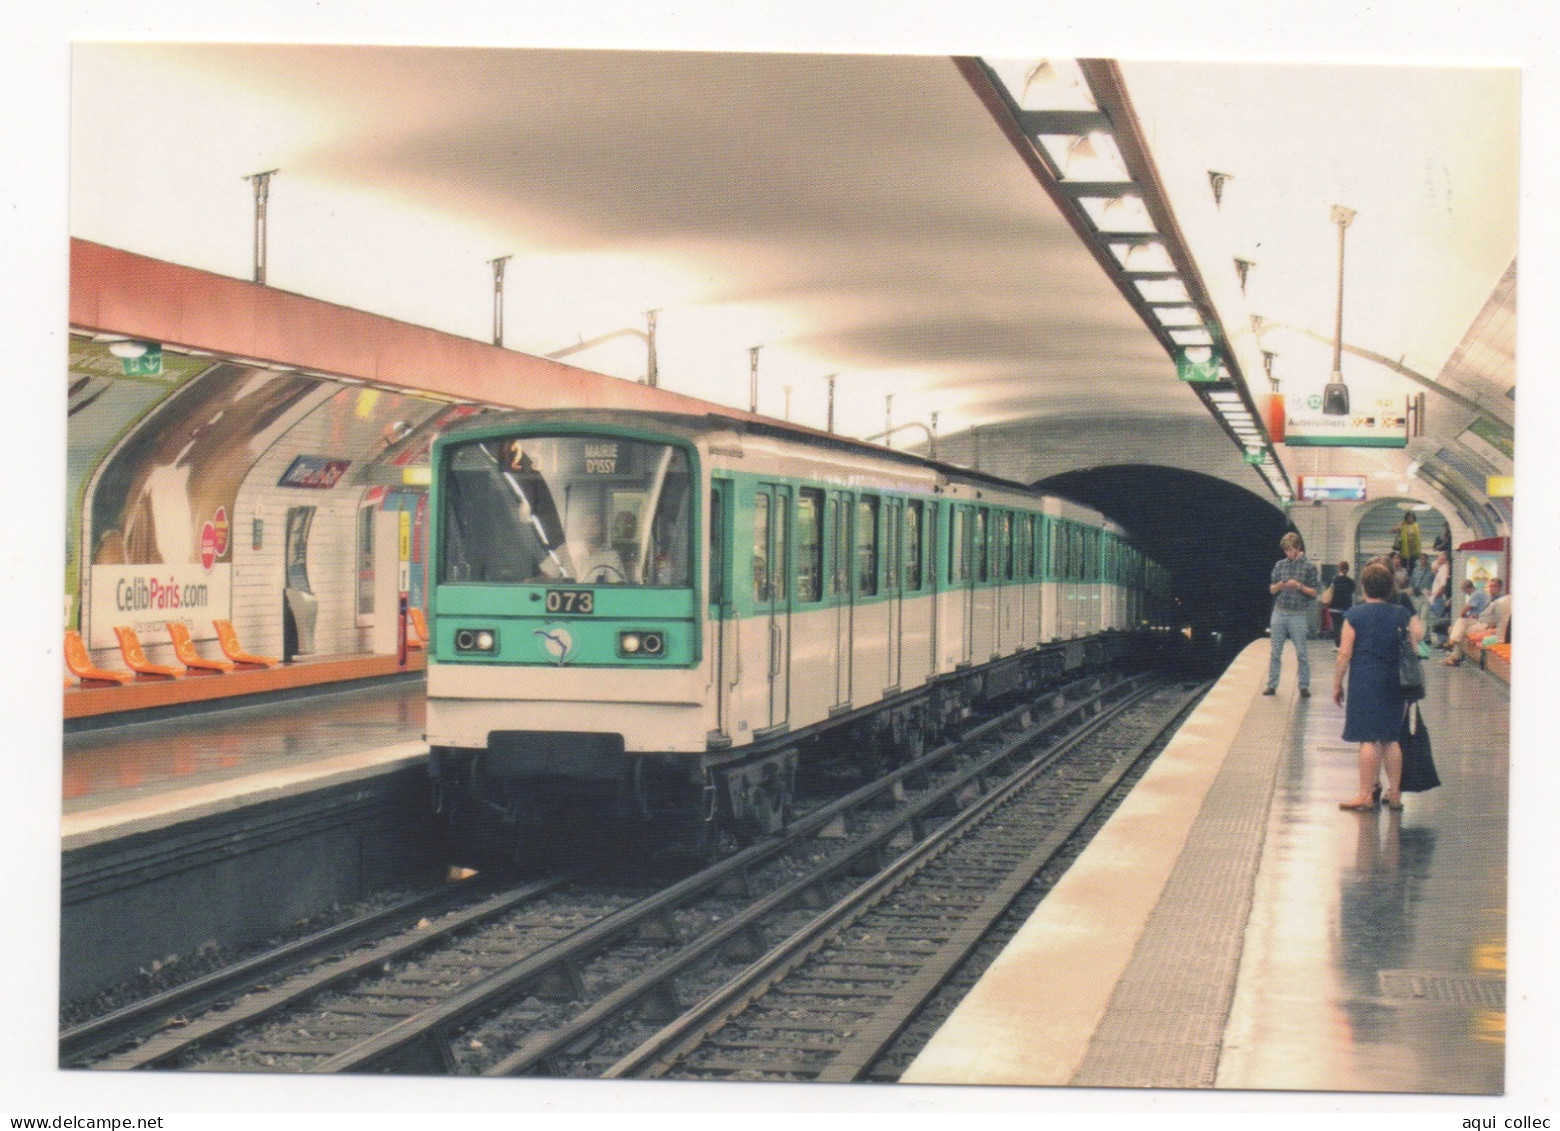 CART'ENRTAIN 2016 LA RAME MF 67 N°073 DE LA LIGNE 12 (MAIRIE D'ISSY-AUBERVILLIERS) DU MÉTRO DE LA RATP - Metro